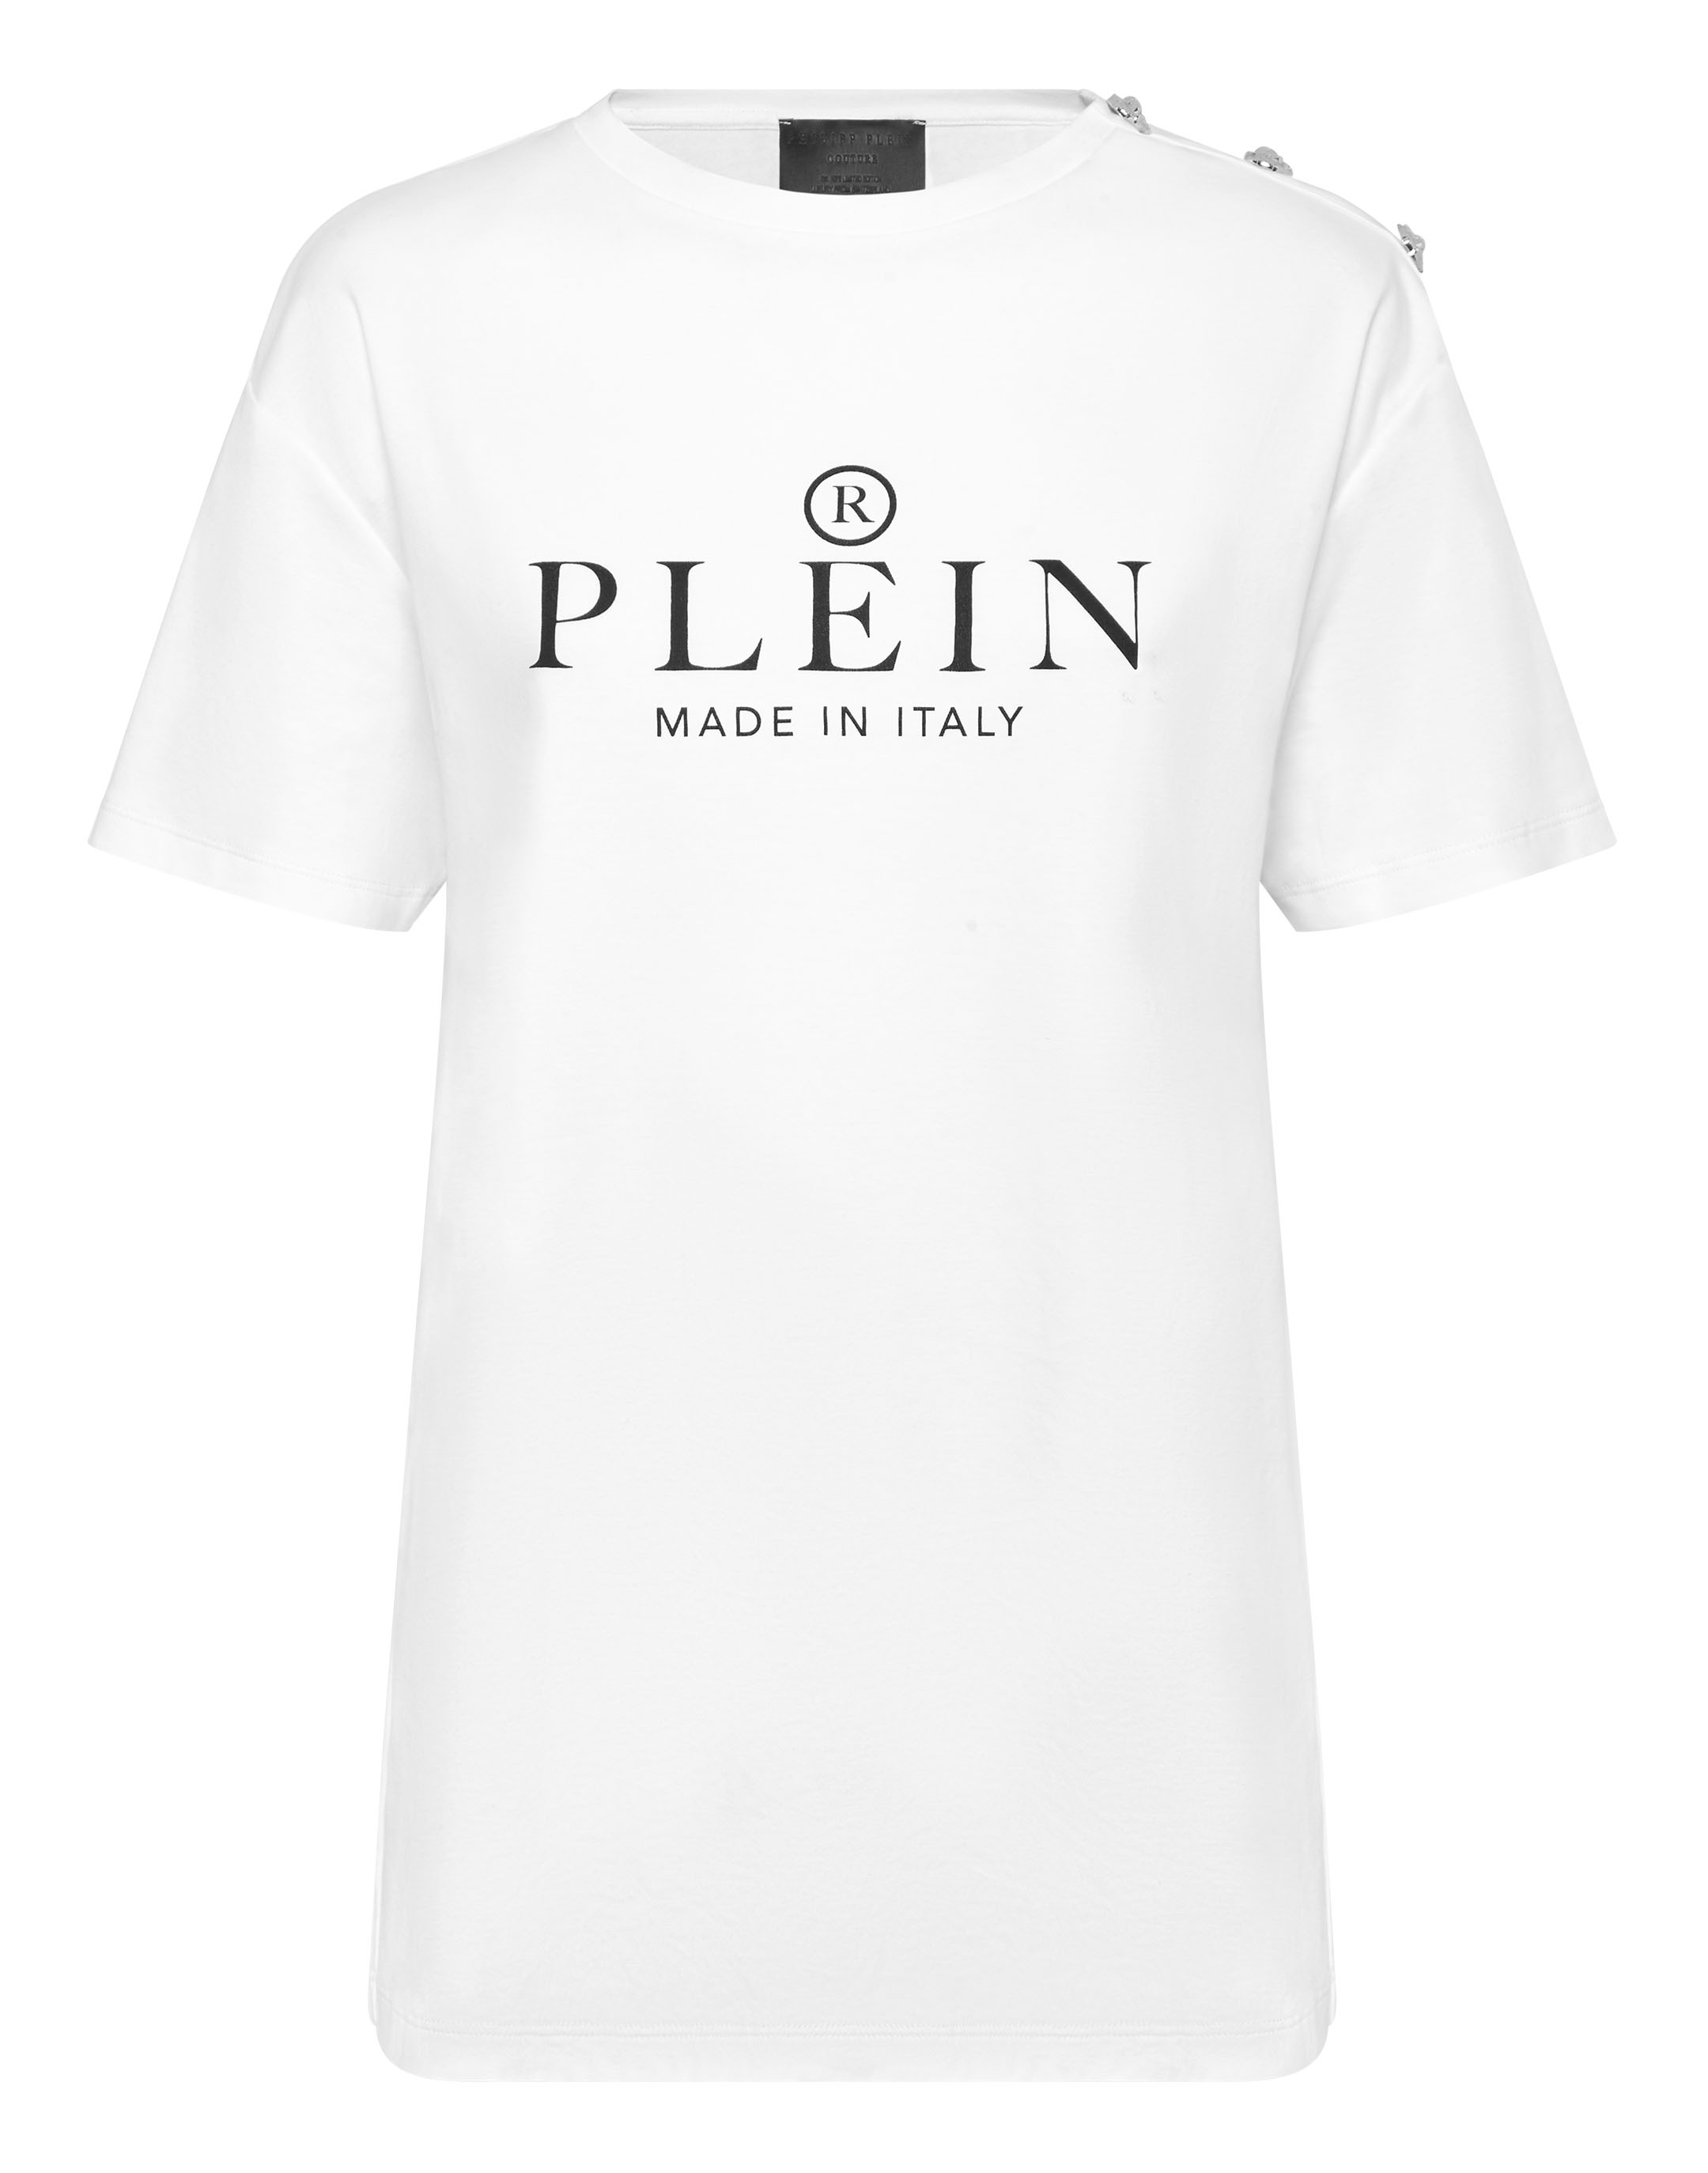 Afscheid Portret Zes T-shirt Man Fit Philipp Plein TM | Philipp Plein